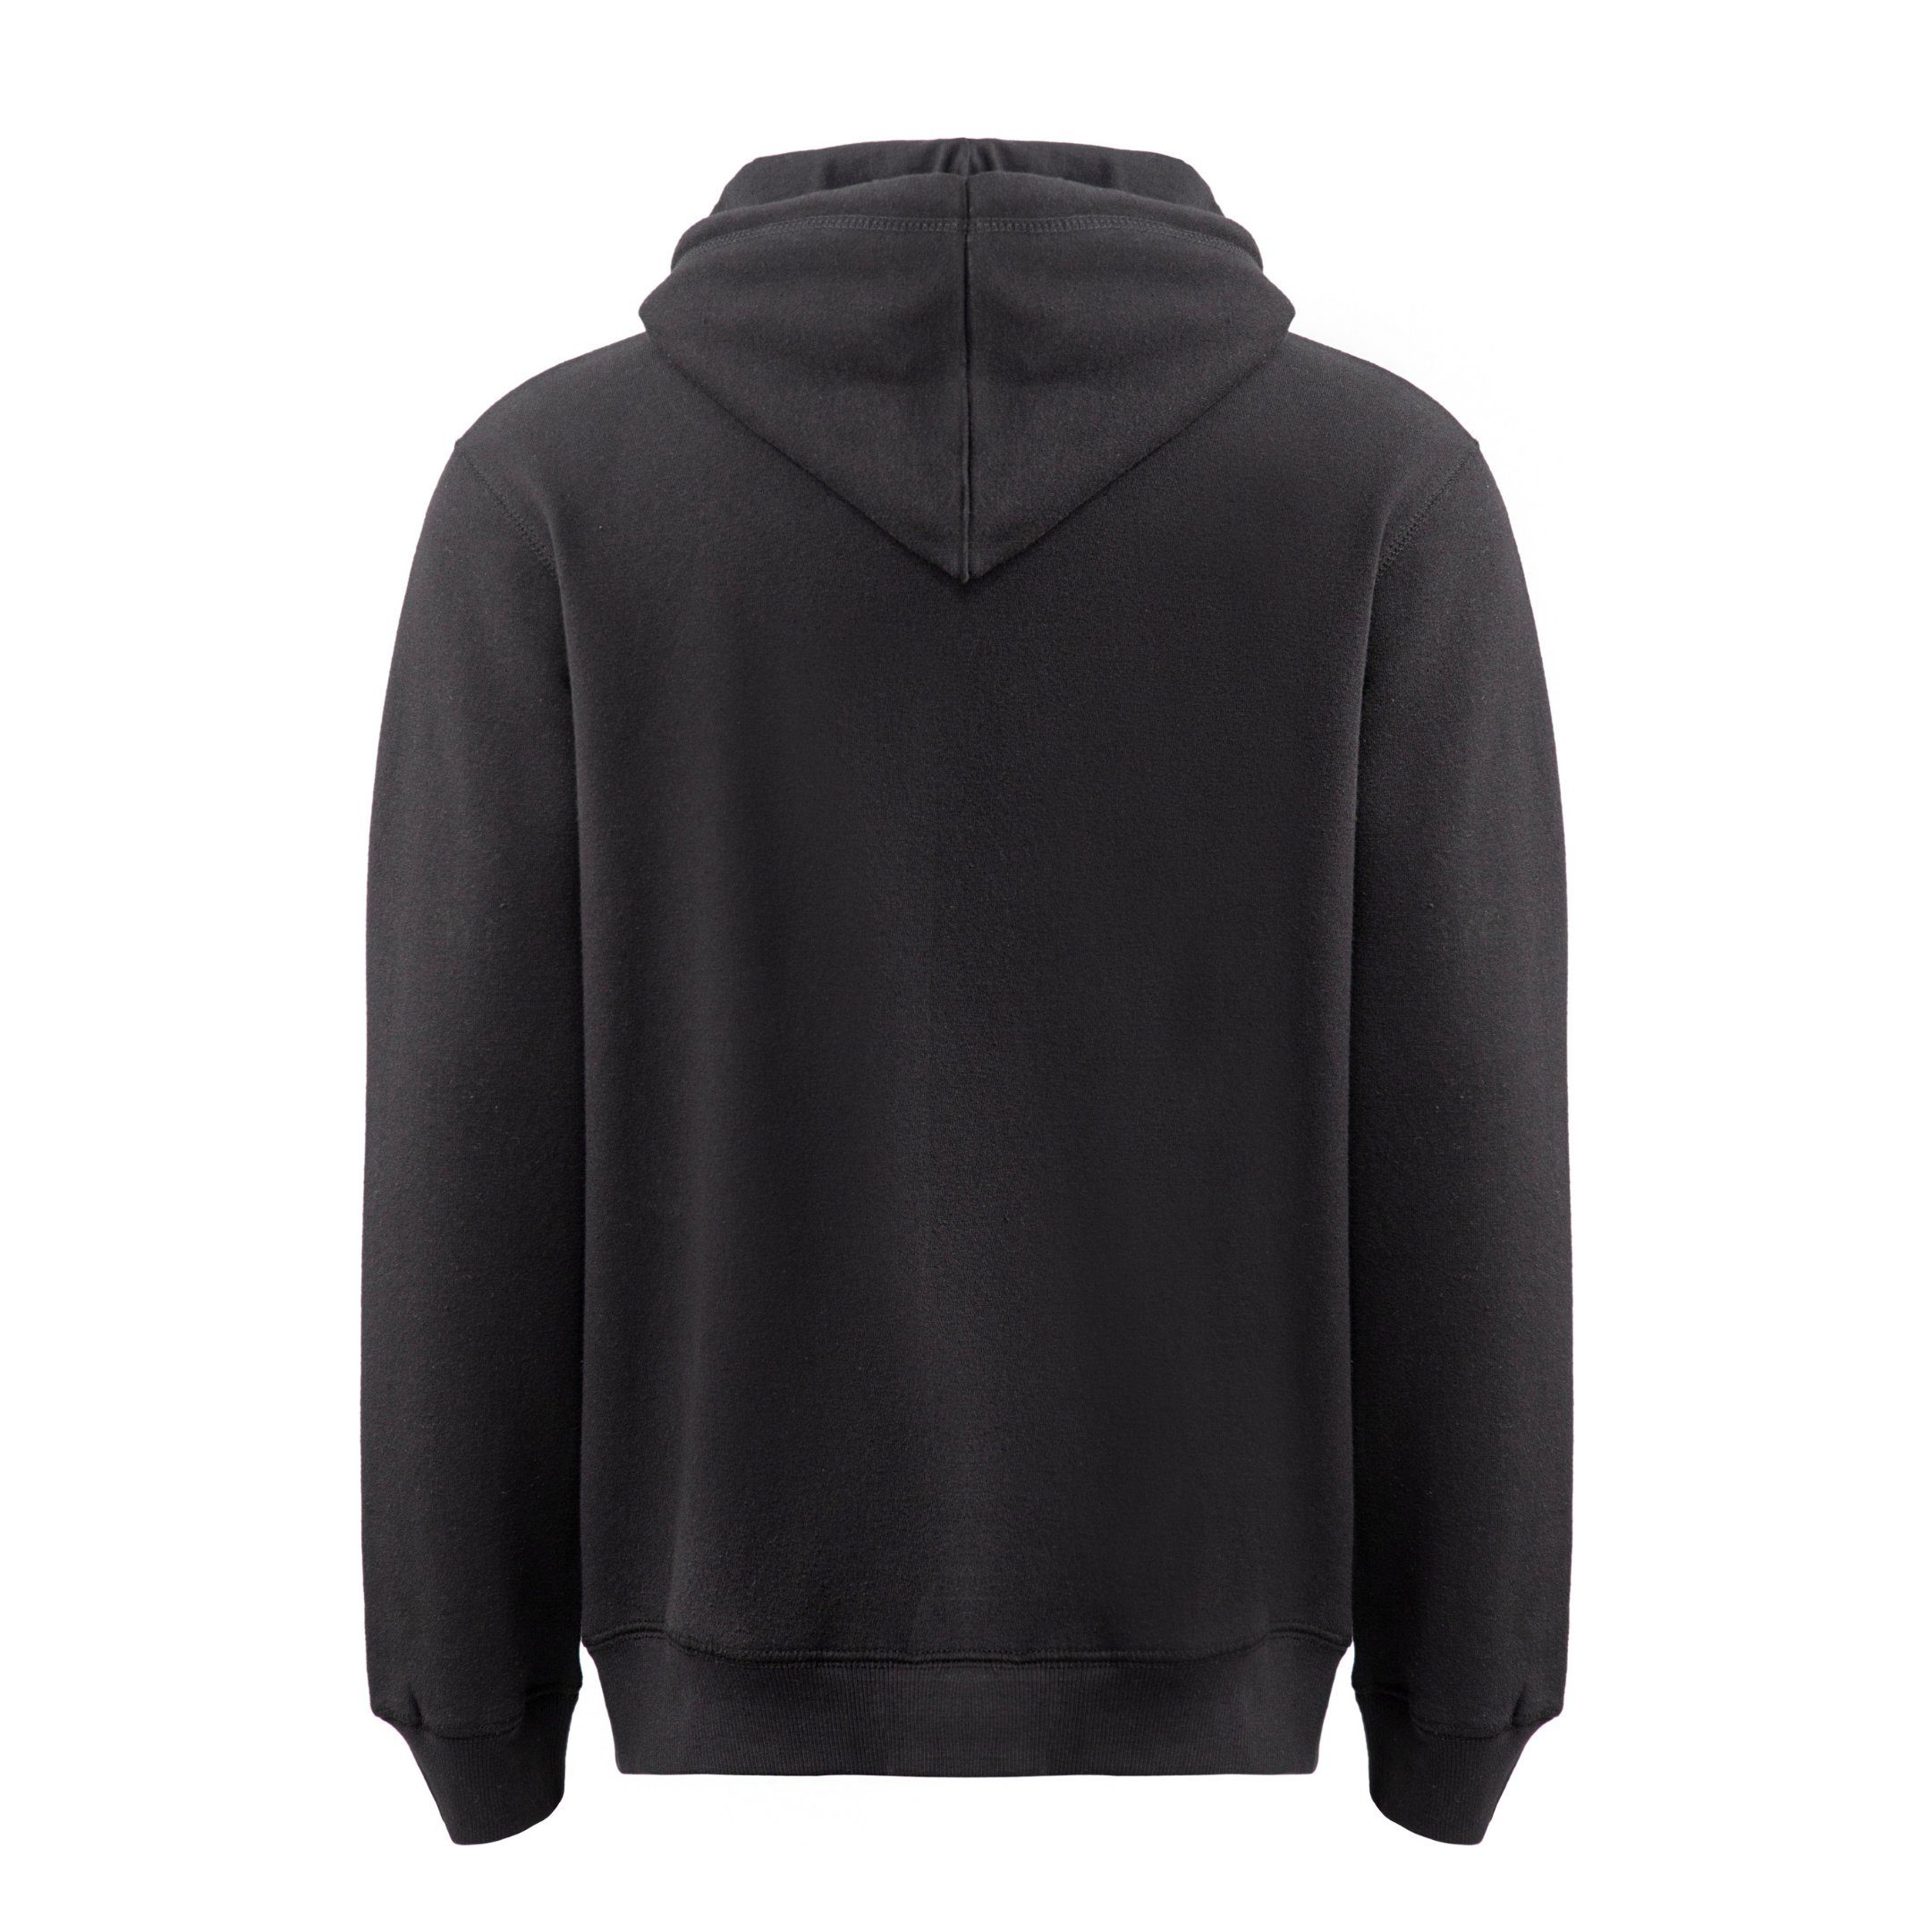 L mit Sweatshirt Schwarz Uni-Farben, - Reißverschluss, M Kapuze Herrensweatjacke, XXL Zestri Sweatshirtjacke mit Sweatshirt, Herren S XL Pullover